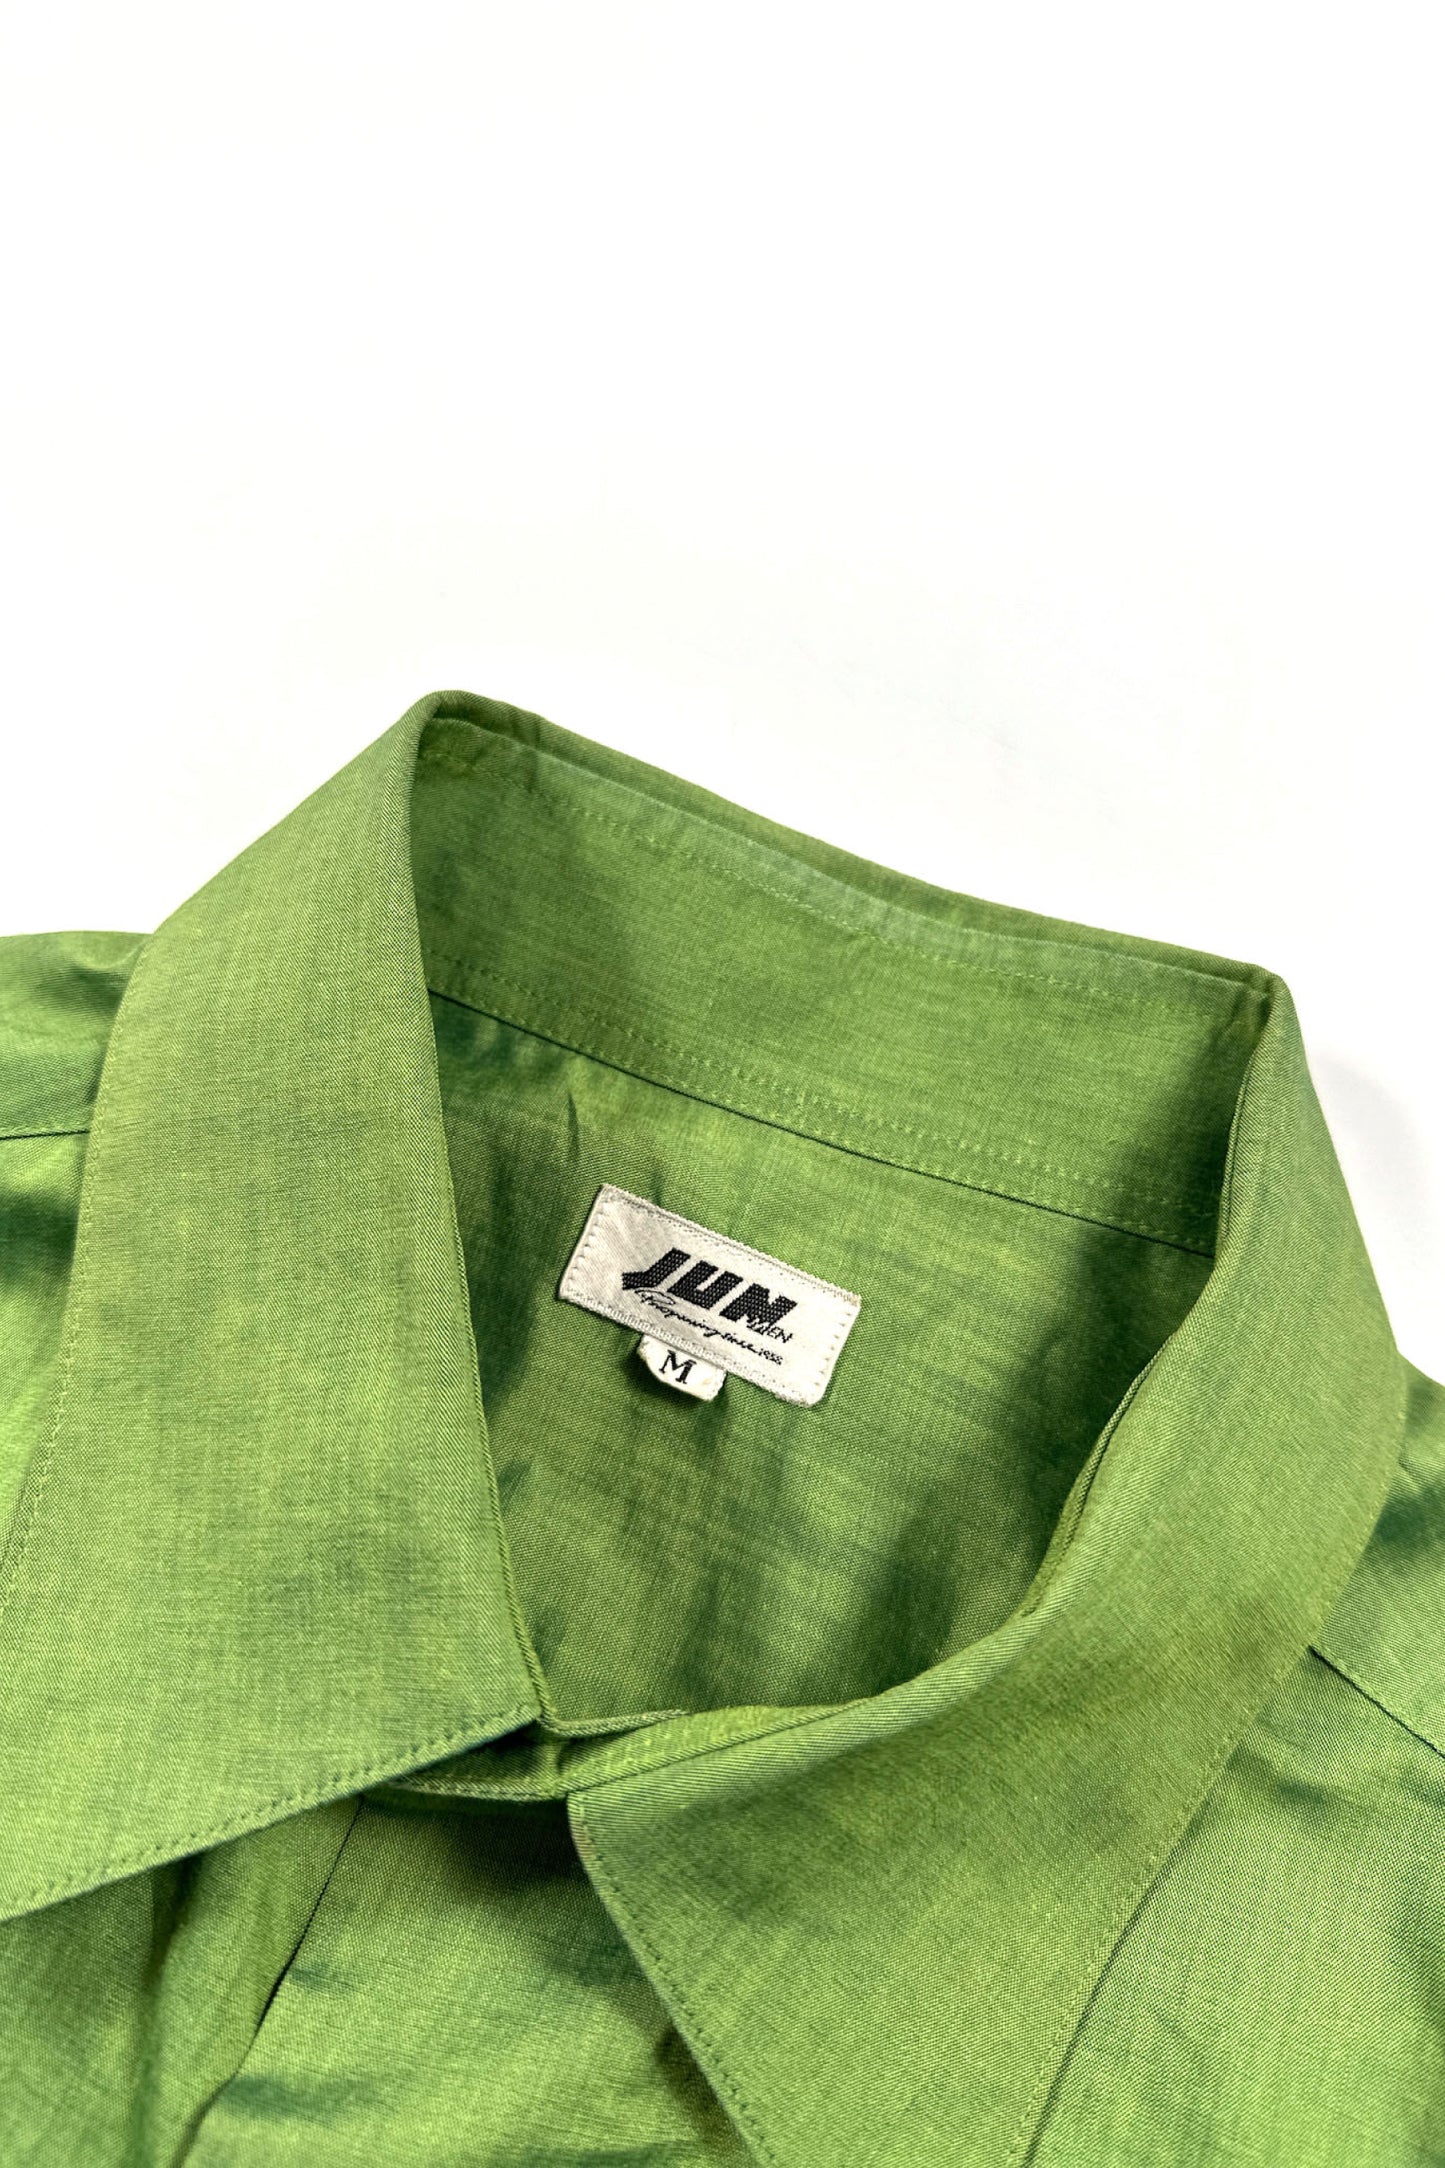 90's JUN green shirt